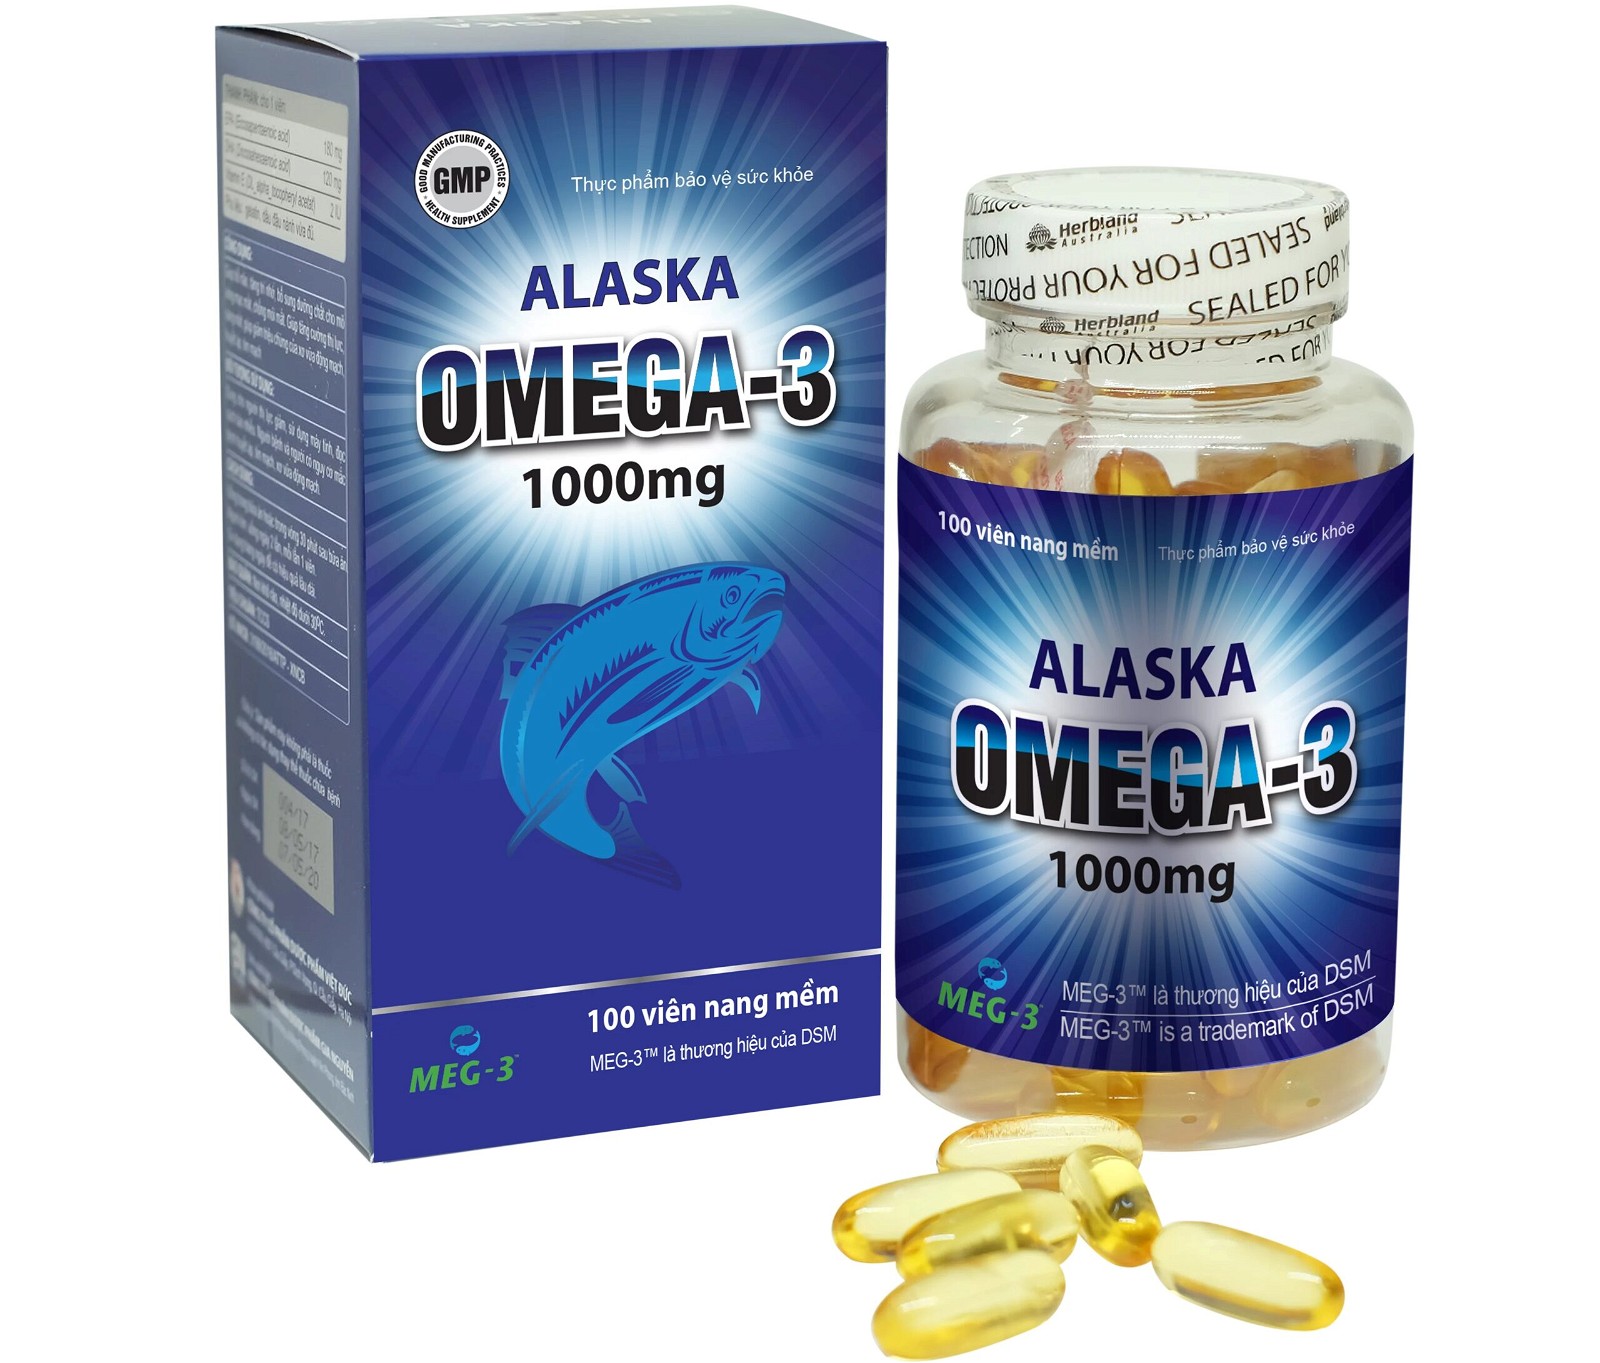 Dầu cá Alaska là thực phẩm chức năng bổ sung omega 3 cho cơ thể